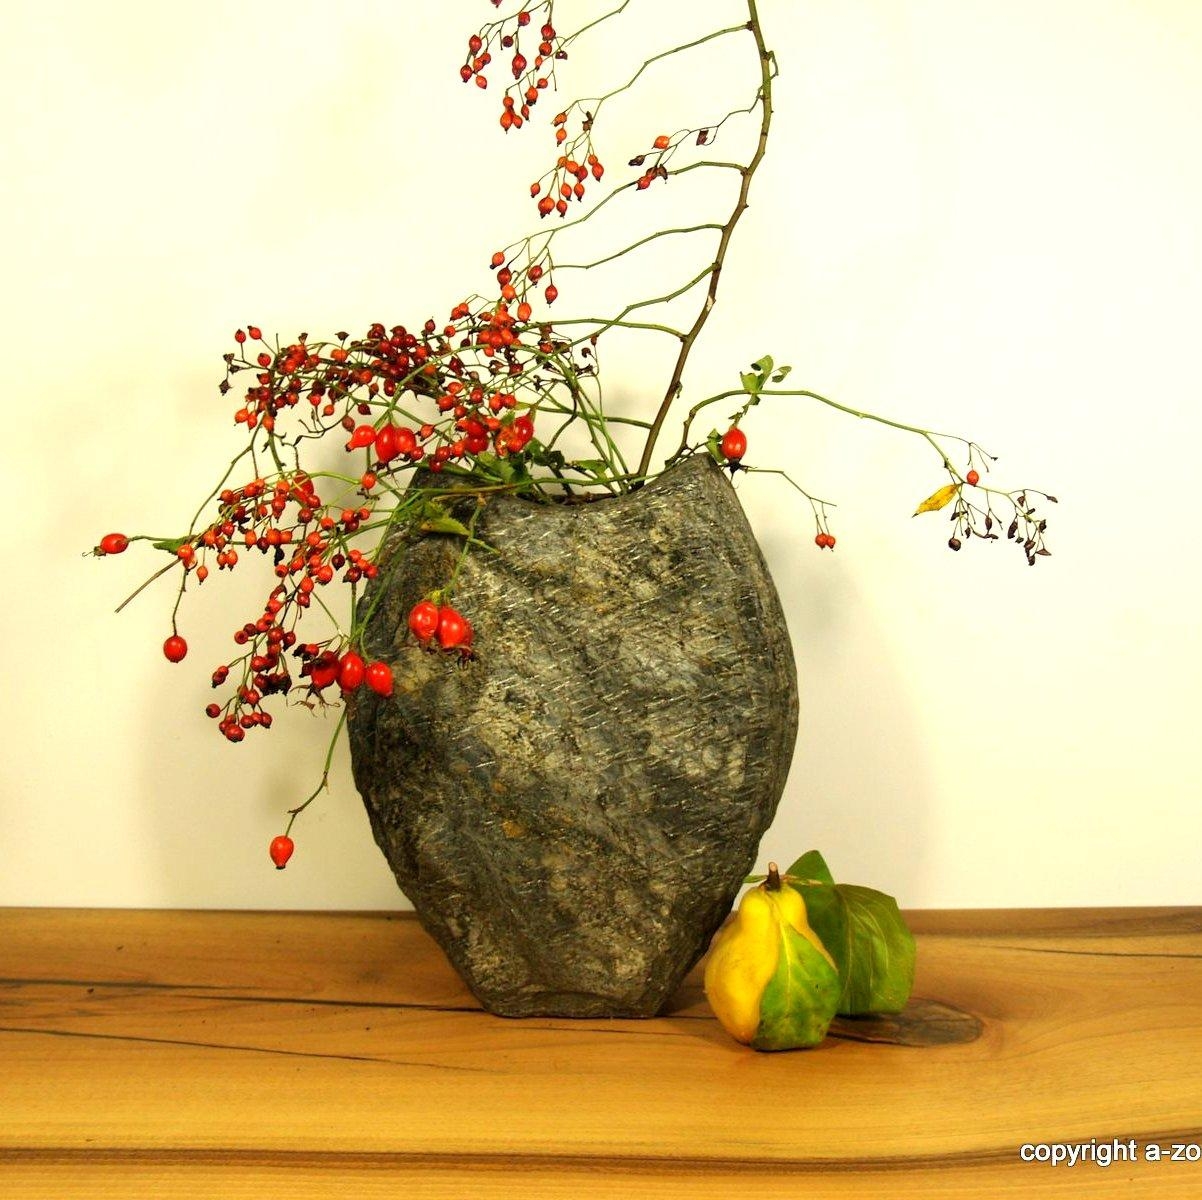 Ich liebe #Steinvasen !
zu jeder #Jahreszeit ganz einfach dekoriert. Hier mit einem #Zweig der #Hagebutte. #Vase #Stein